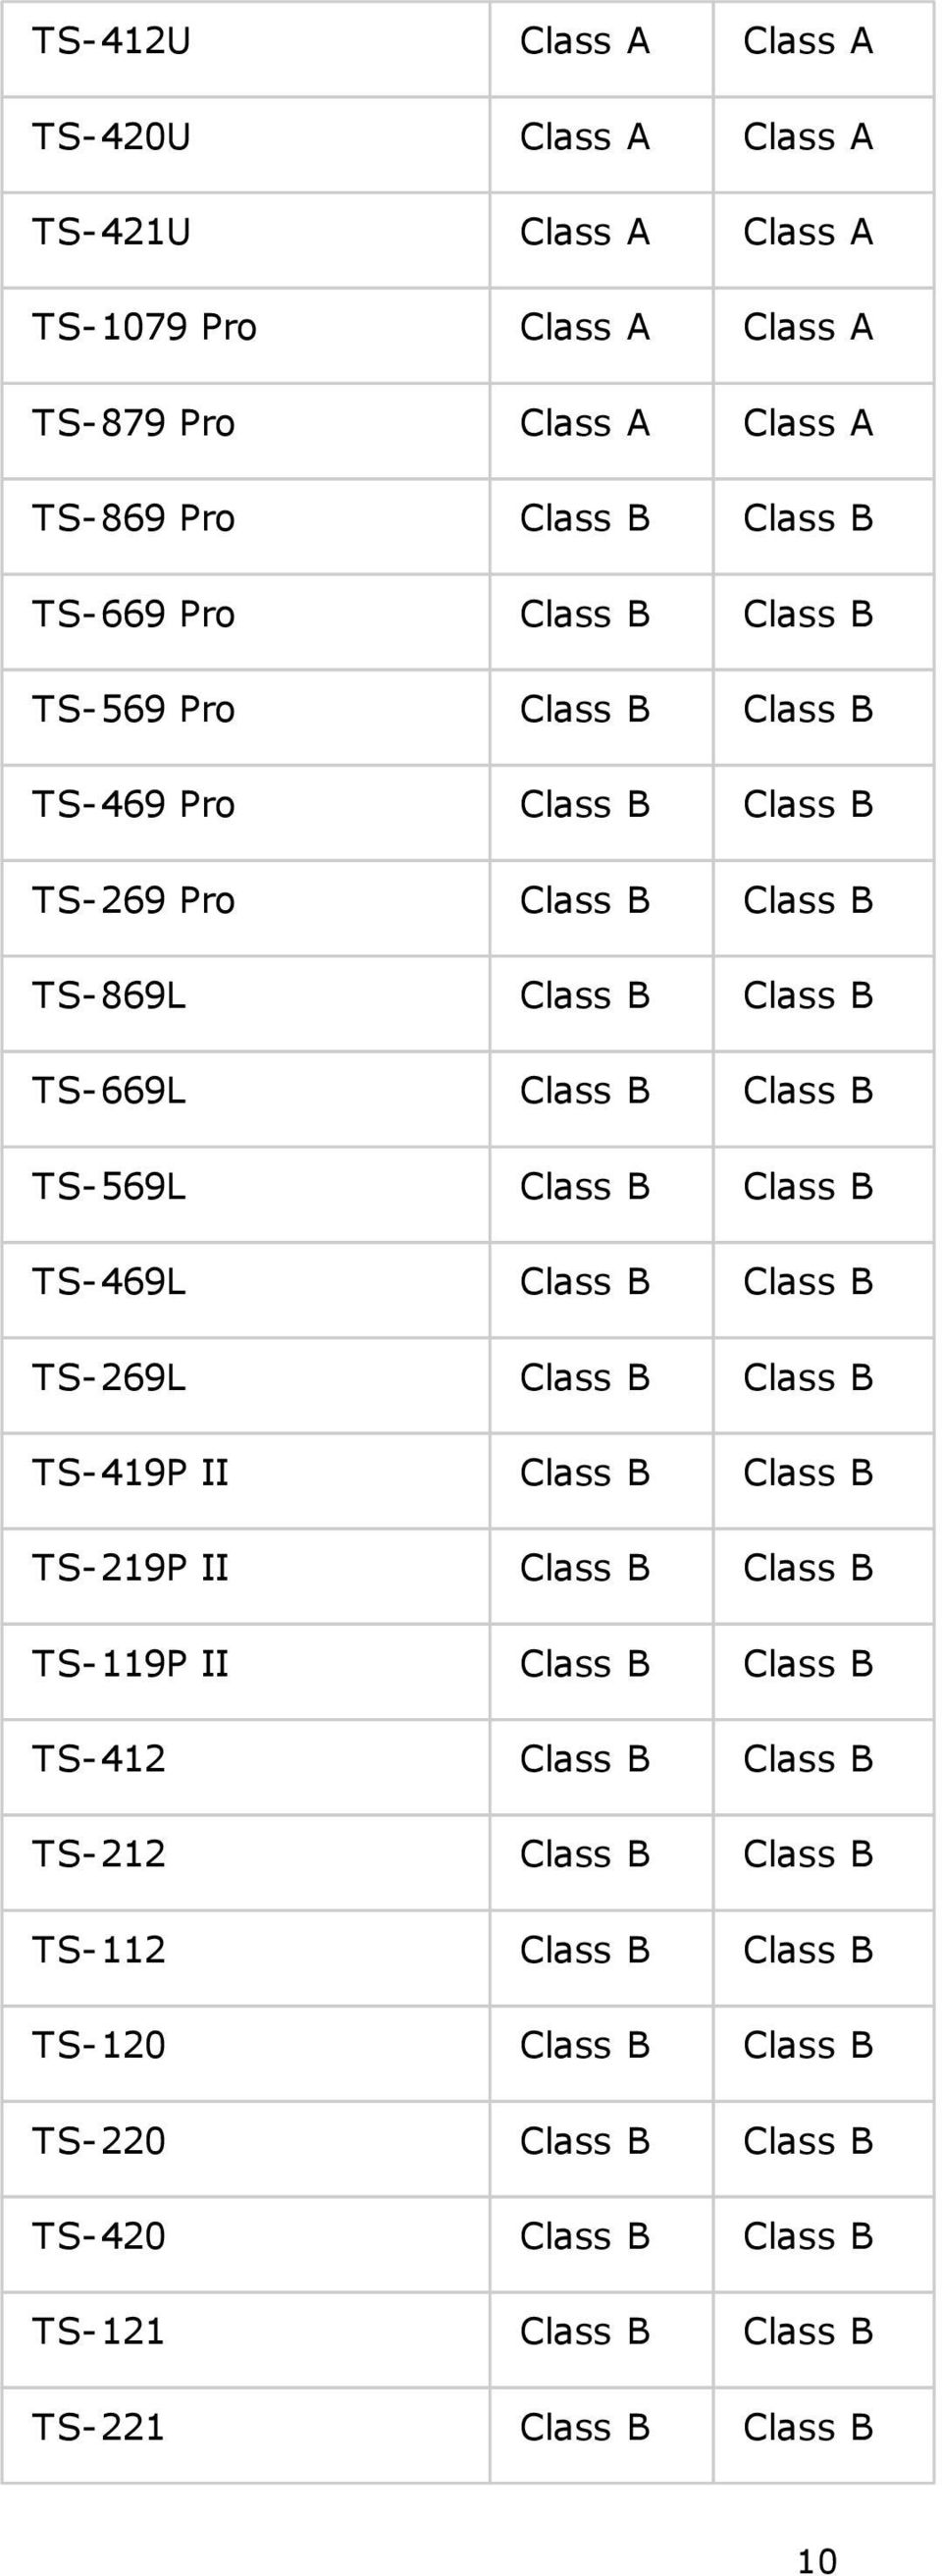 B Class B TS-469L Class B Class B TS-269L Class B Class B TS-419P II Class B Class B TS-219P II Class B Class B TS-119P II Class B Class B TS-412 Class B Class B